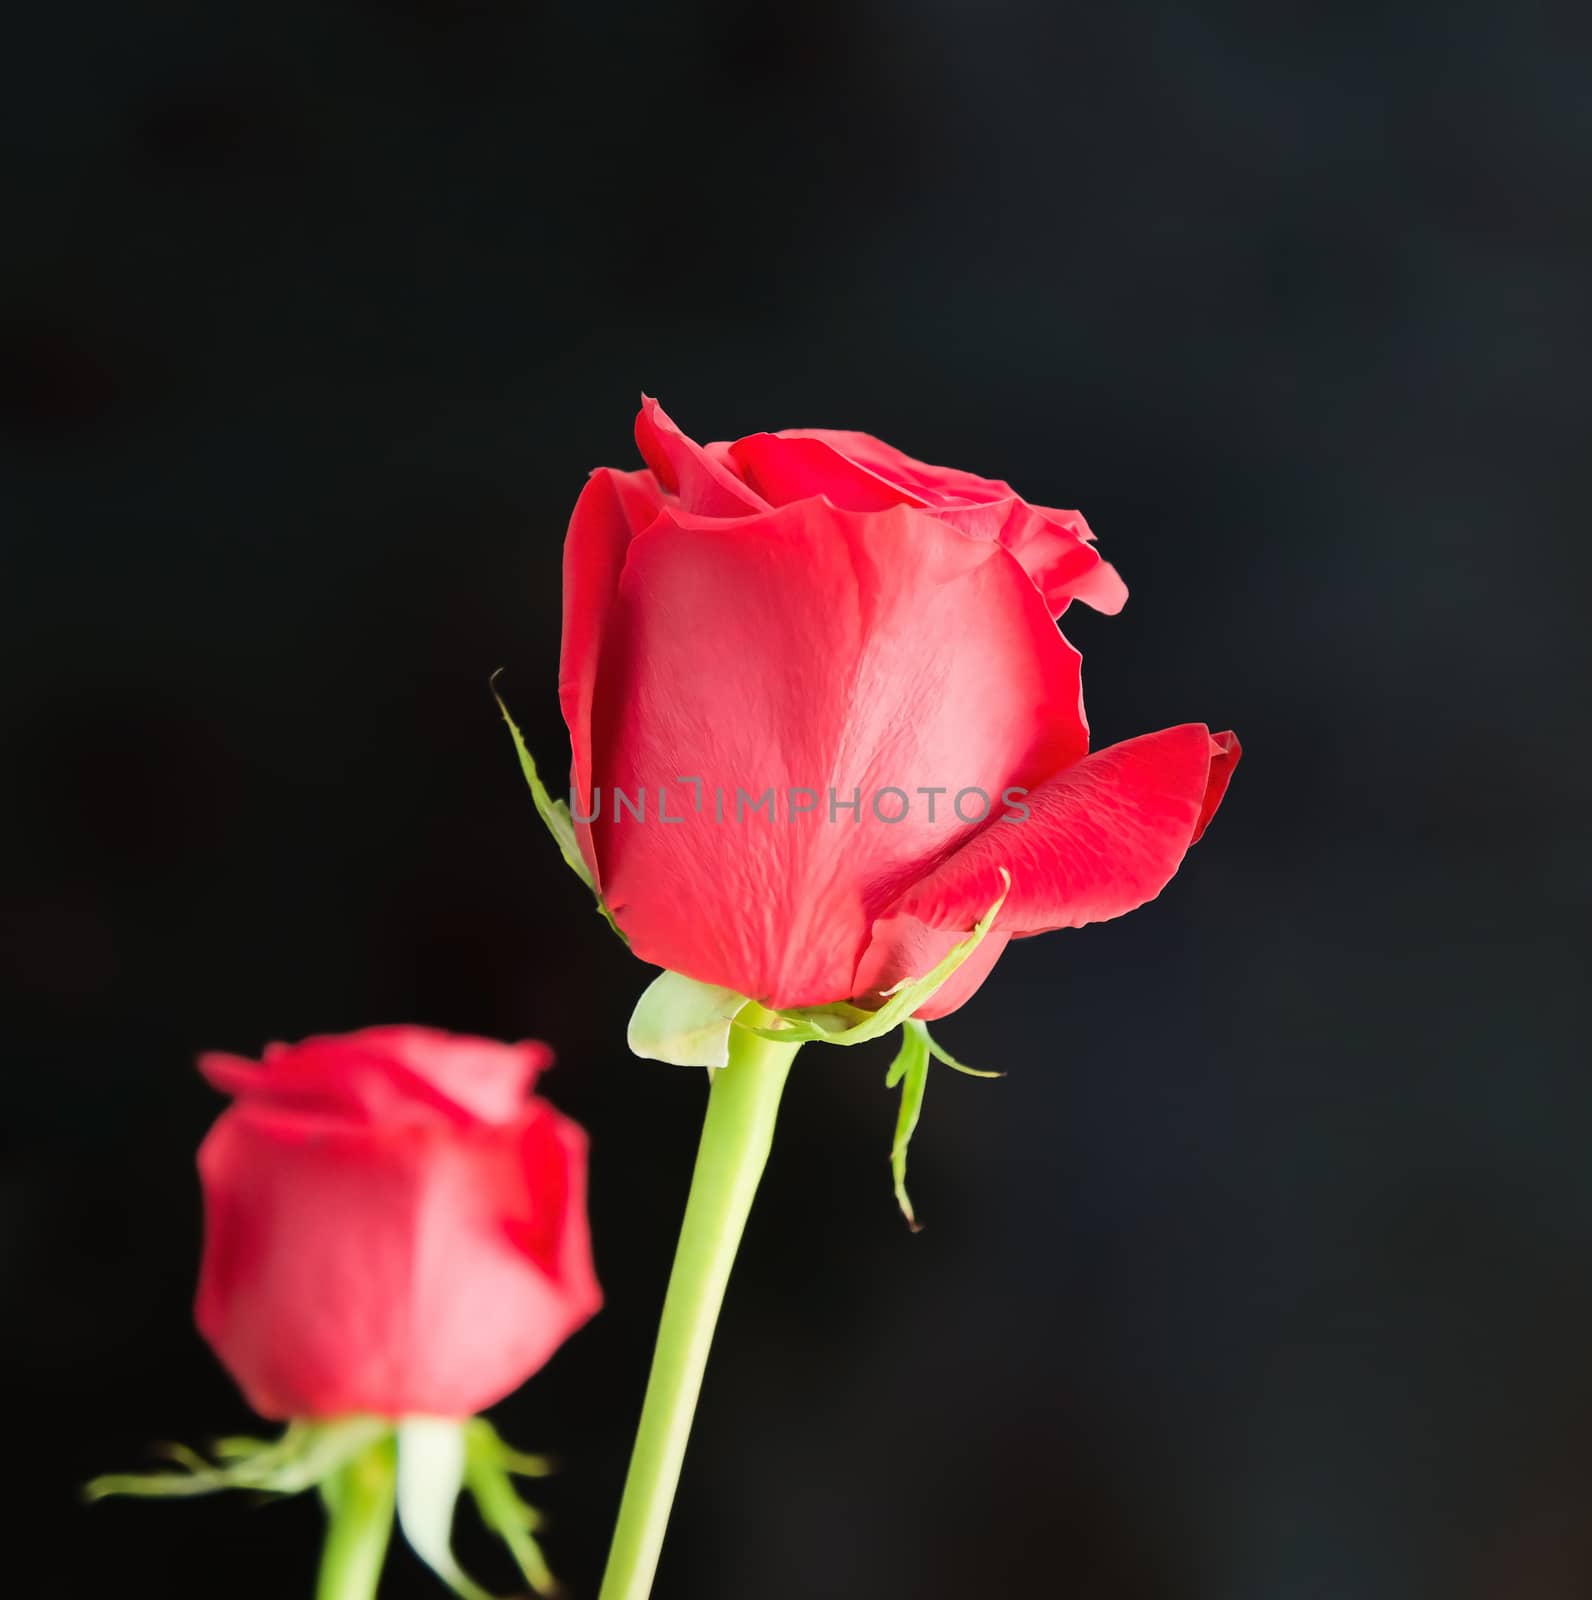 Roses on black by Venakr